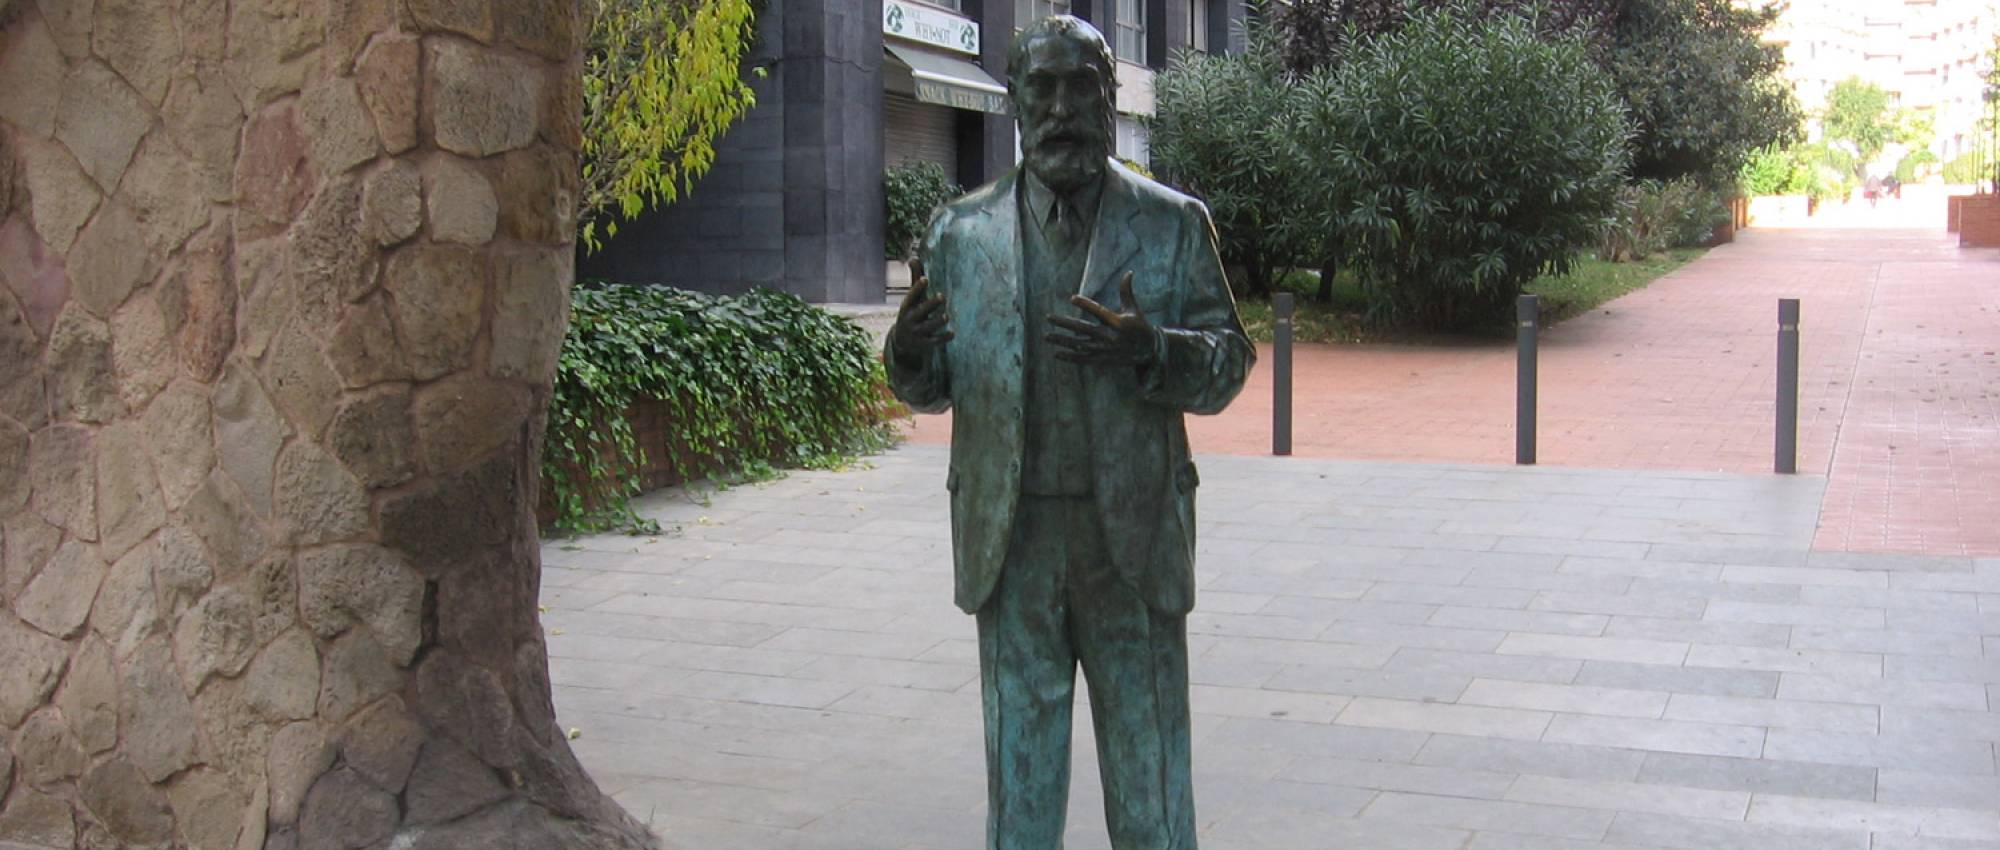 Estàtua d'Antoni Gaudí, de Joaquim Camps. CC BY-SA 3.0 - Canaan / Wikimedia Commons